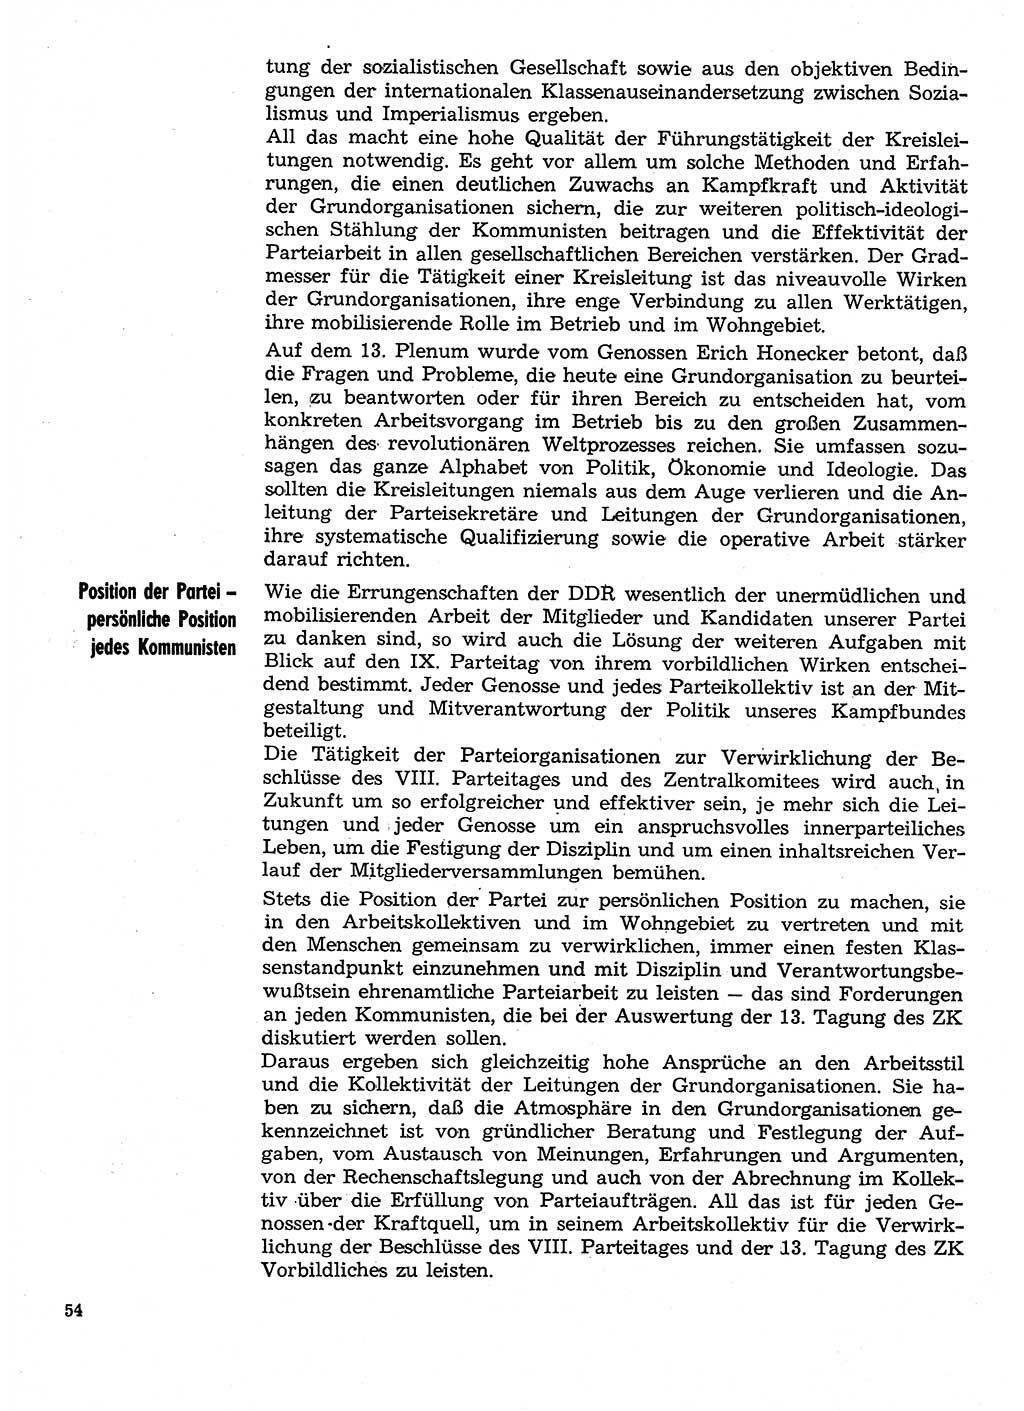 Neuer Weg (NW), Organ des Zentralkomitees (ZK) der SED (Sozialistische Einheitspartei Deutschlands) für Fragen des Parteilebens, 30. Jahrgang [Deutsche Demokratische Republik (DDR)] 1975, Seite 54 (NW ZK SED DDR 1975, S. 54)